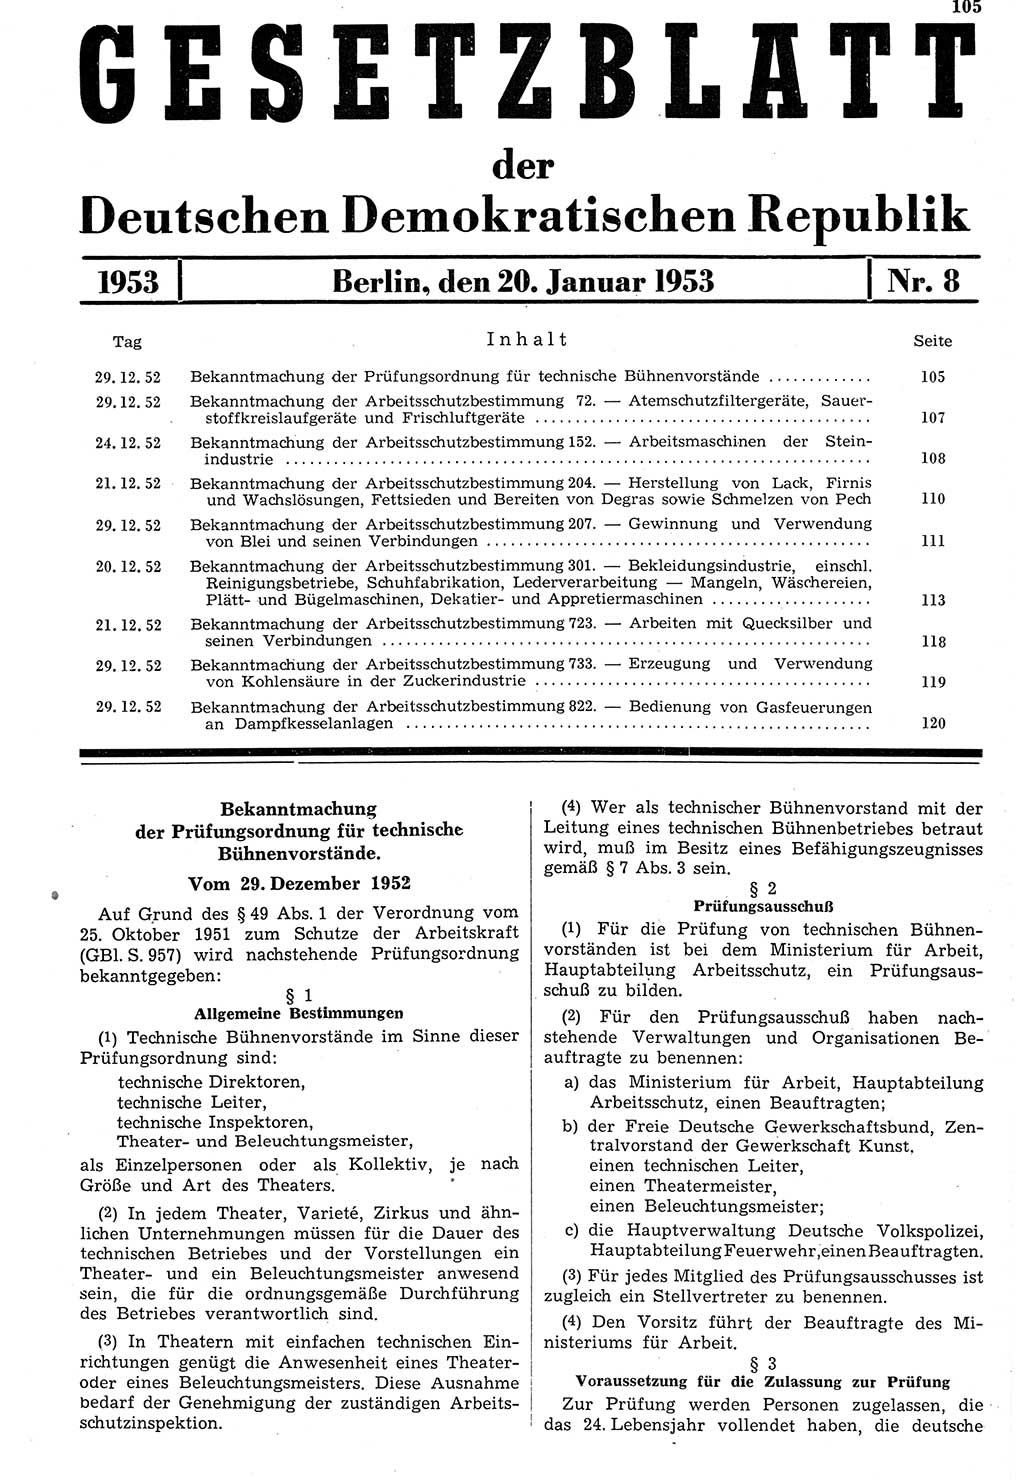 Gesetzblatt (GBl.) der Deutschen Demokratischen Republik (DDR) 1953, Seite 105 (GBl. DDR 1953, S. 105)